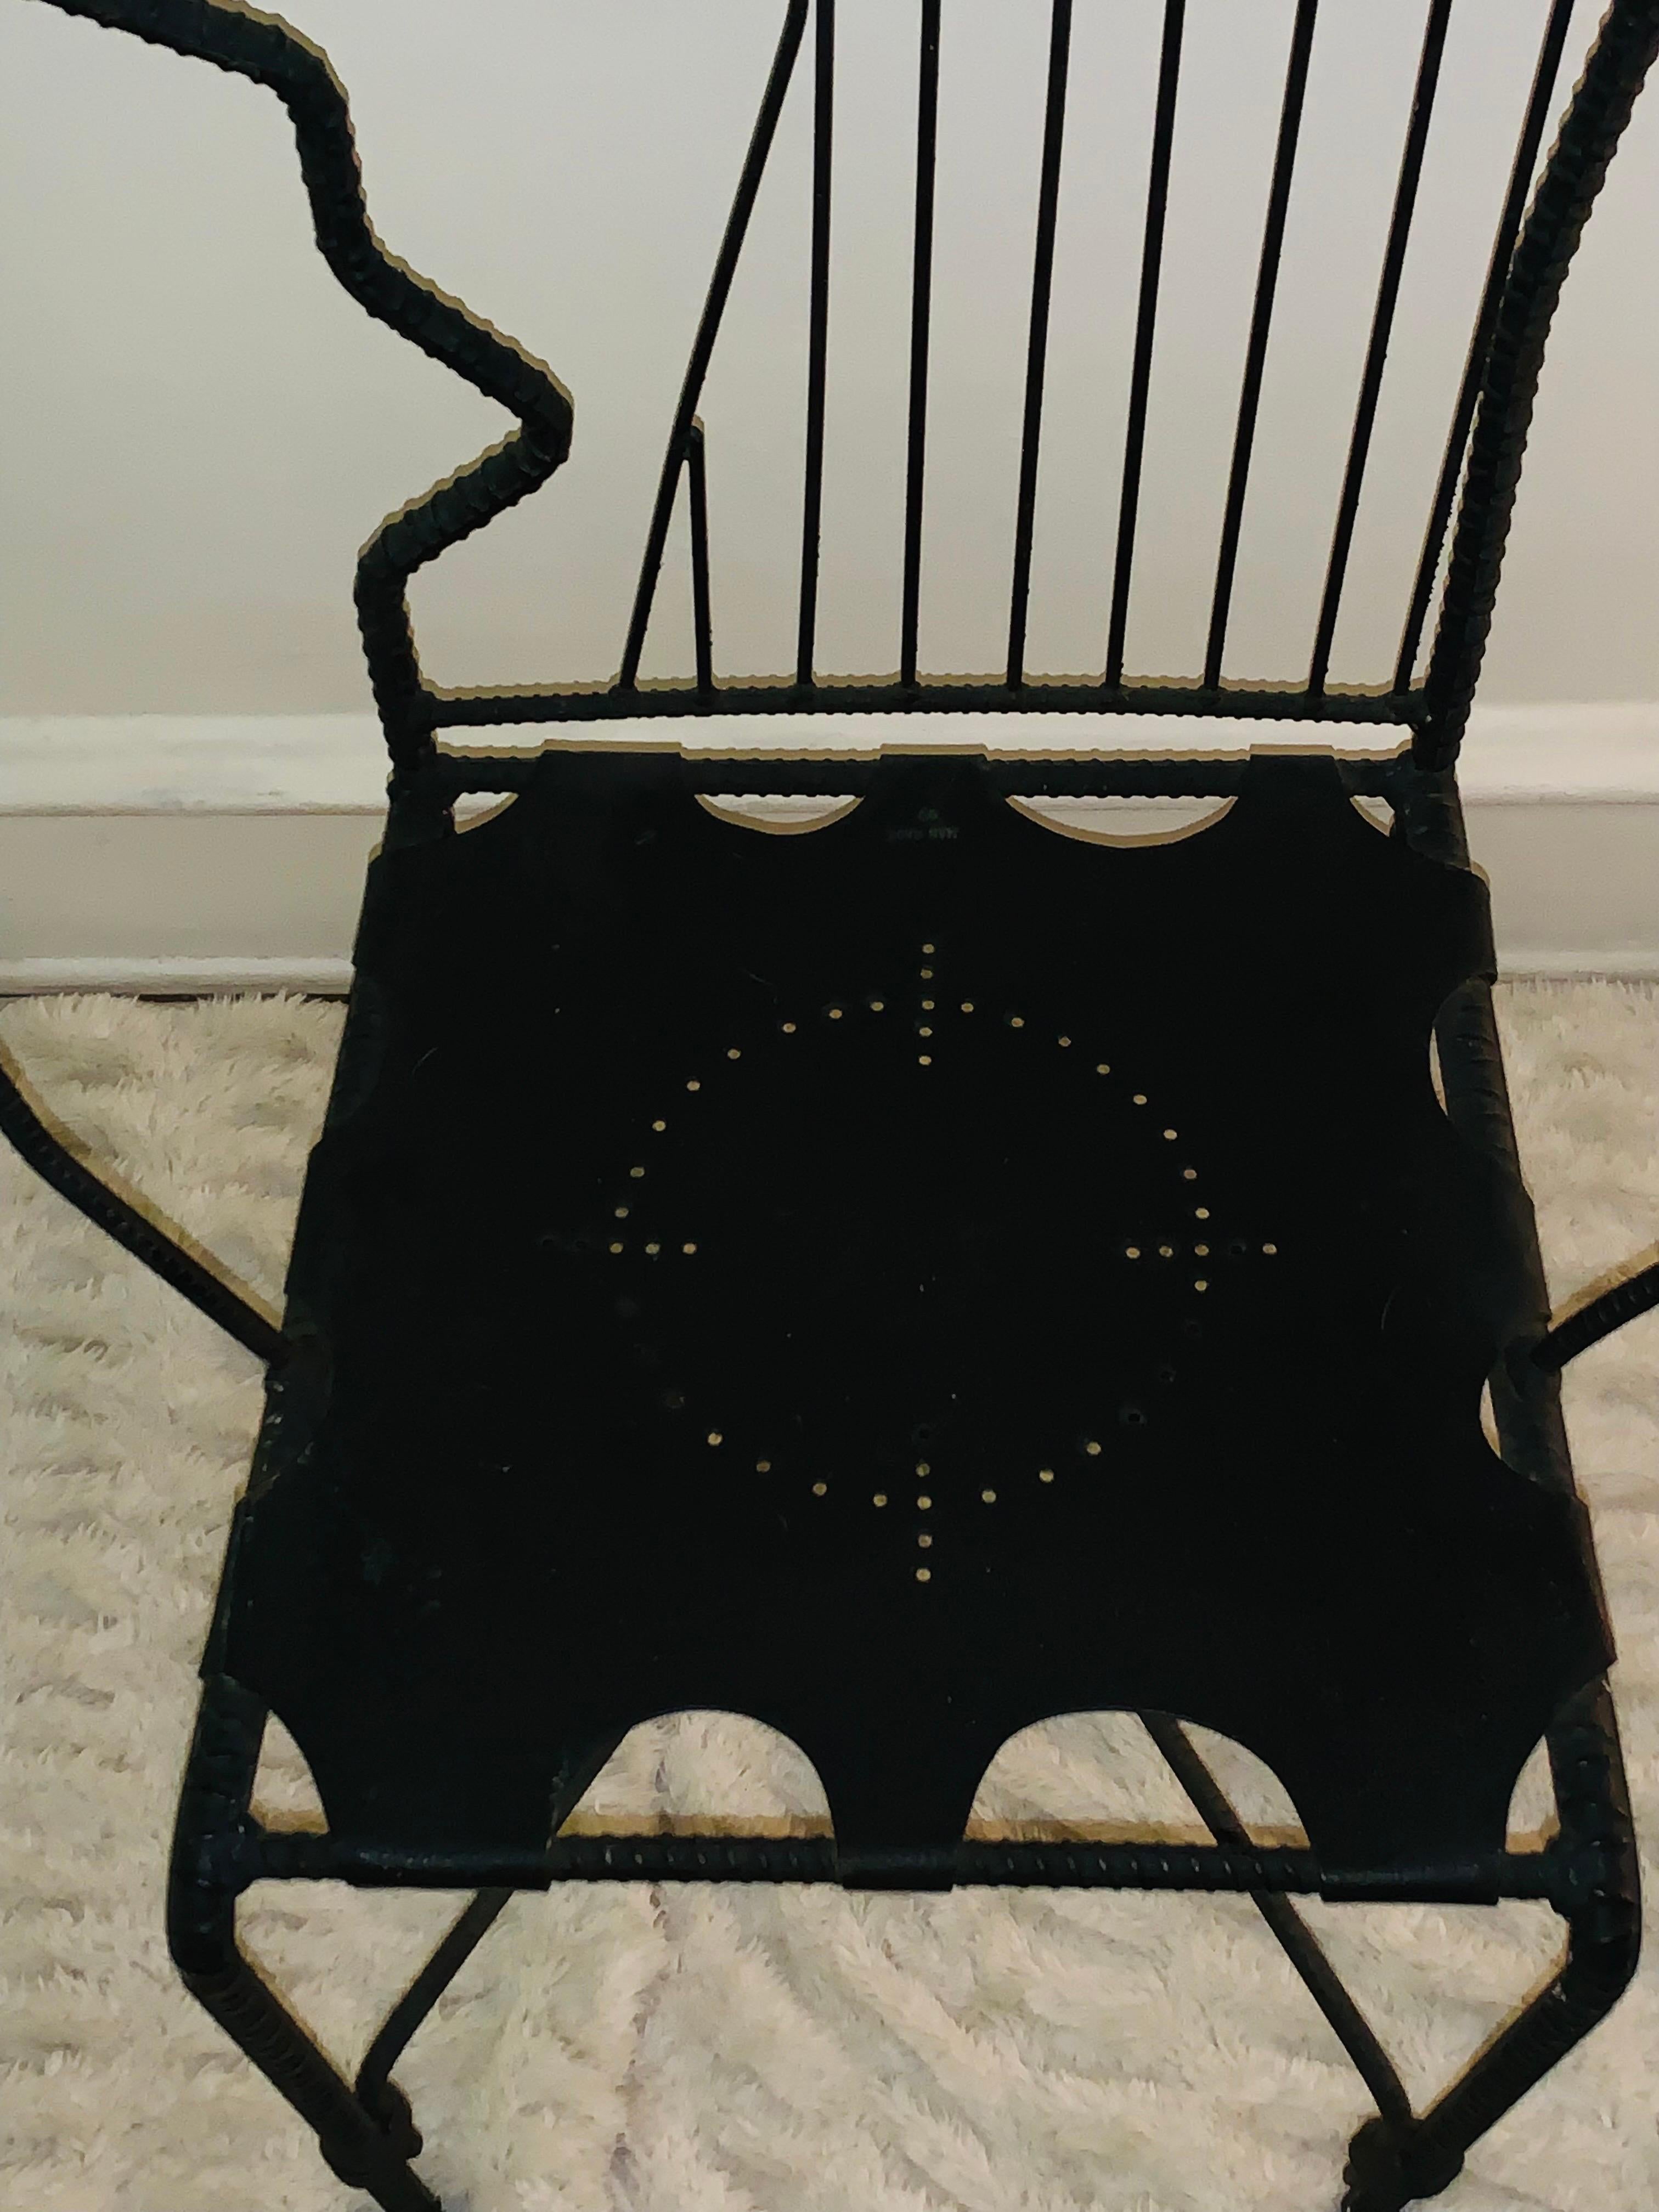 Soudé Paire de chaises sculpturales à visage en fer de l'artiste industriel Ries Niemi, 1990-